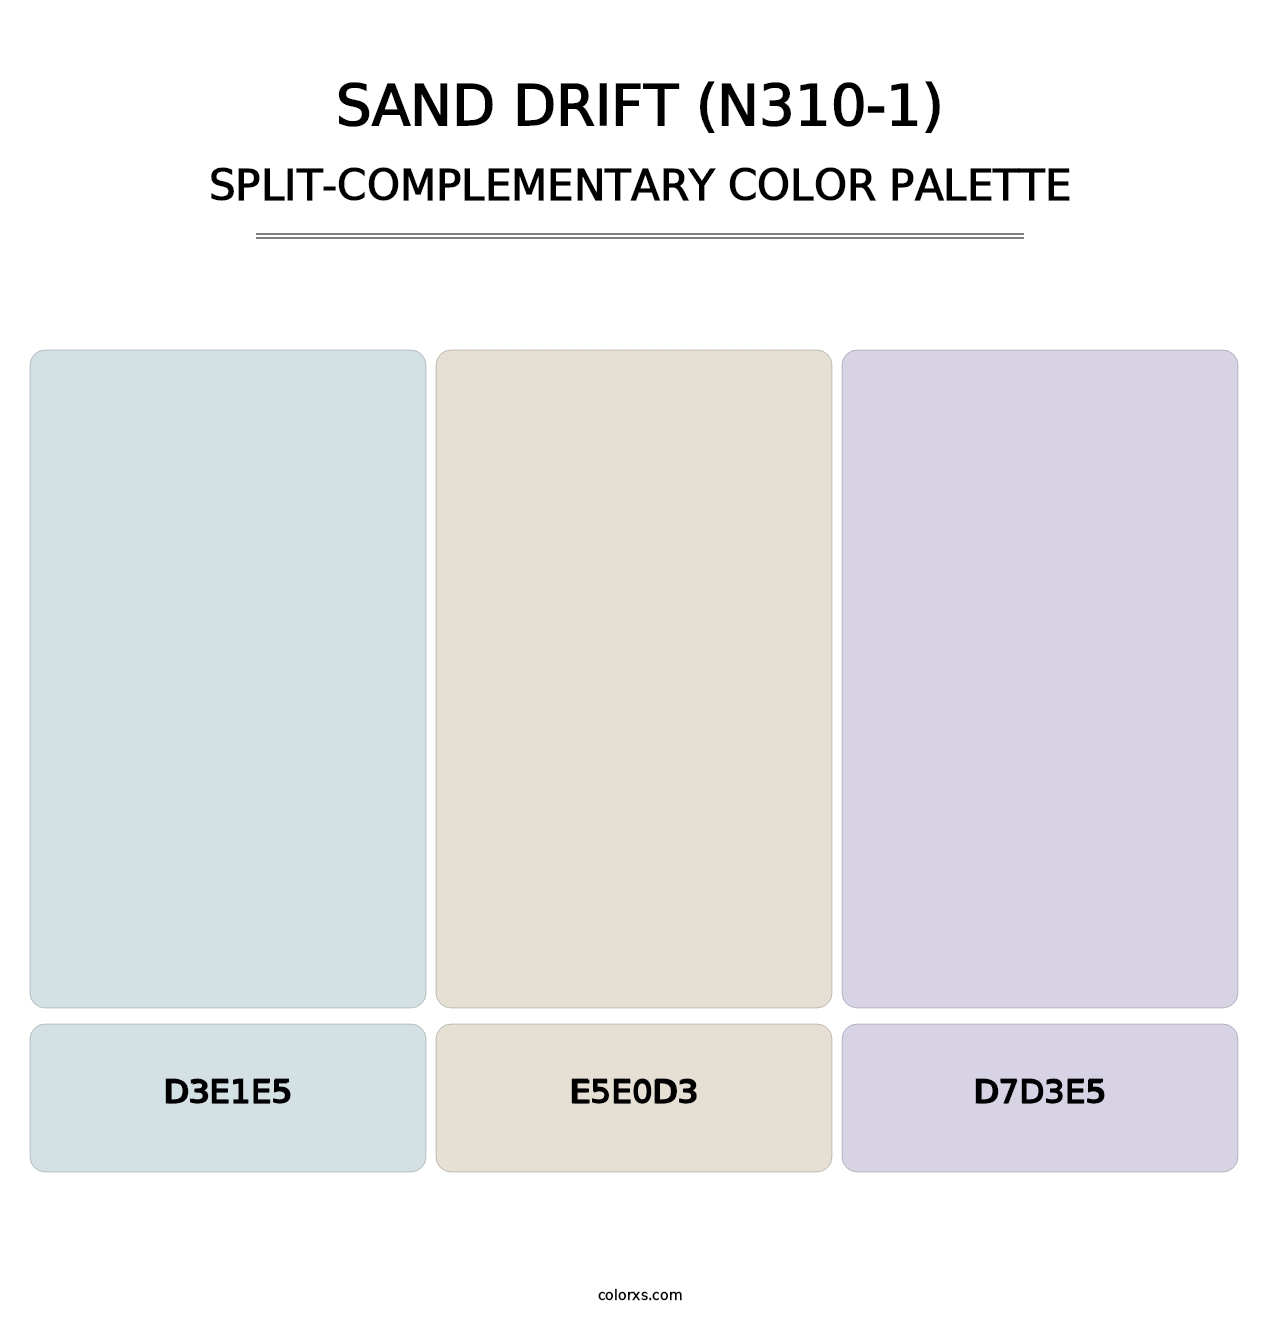 Sand Drift (N310-1) - Split-Complementary Color Palette